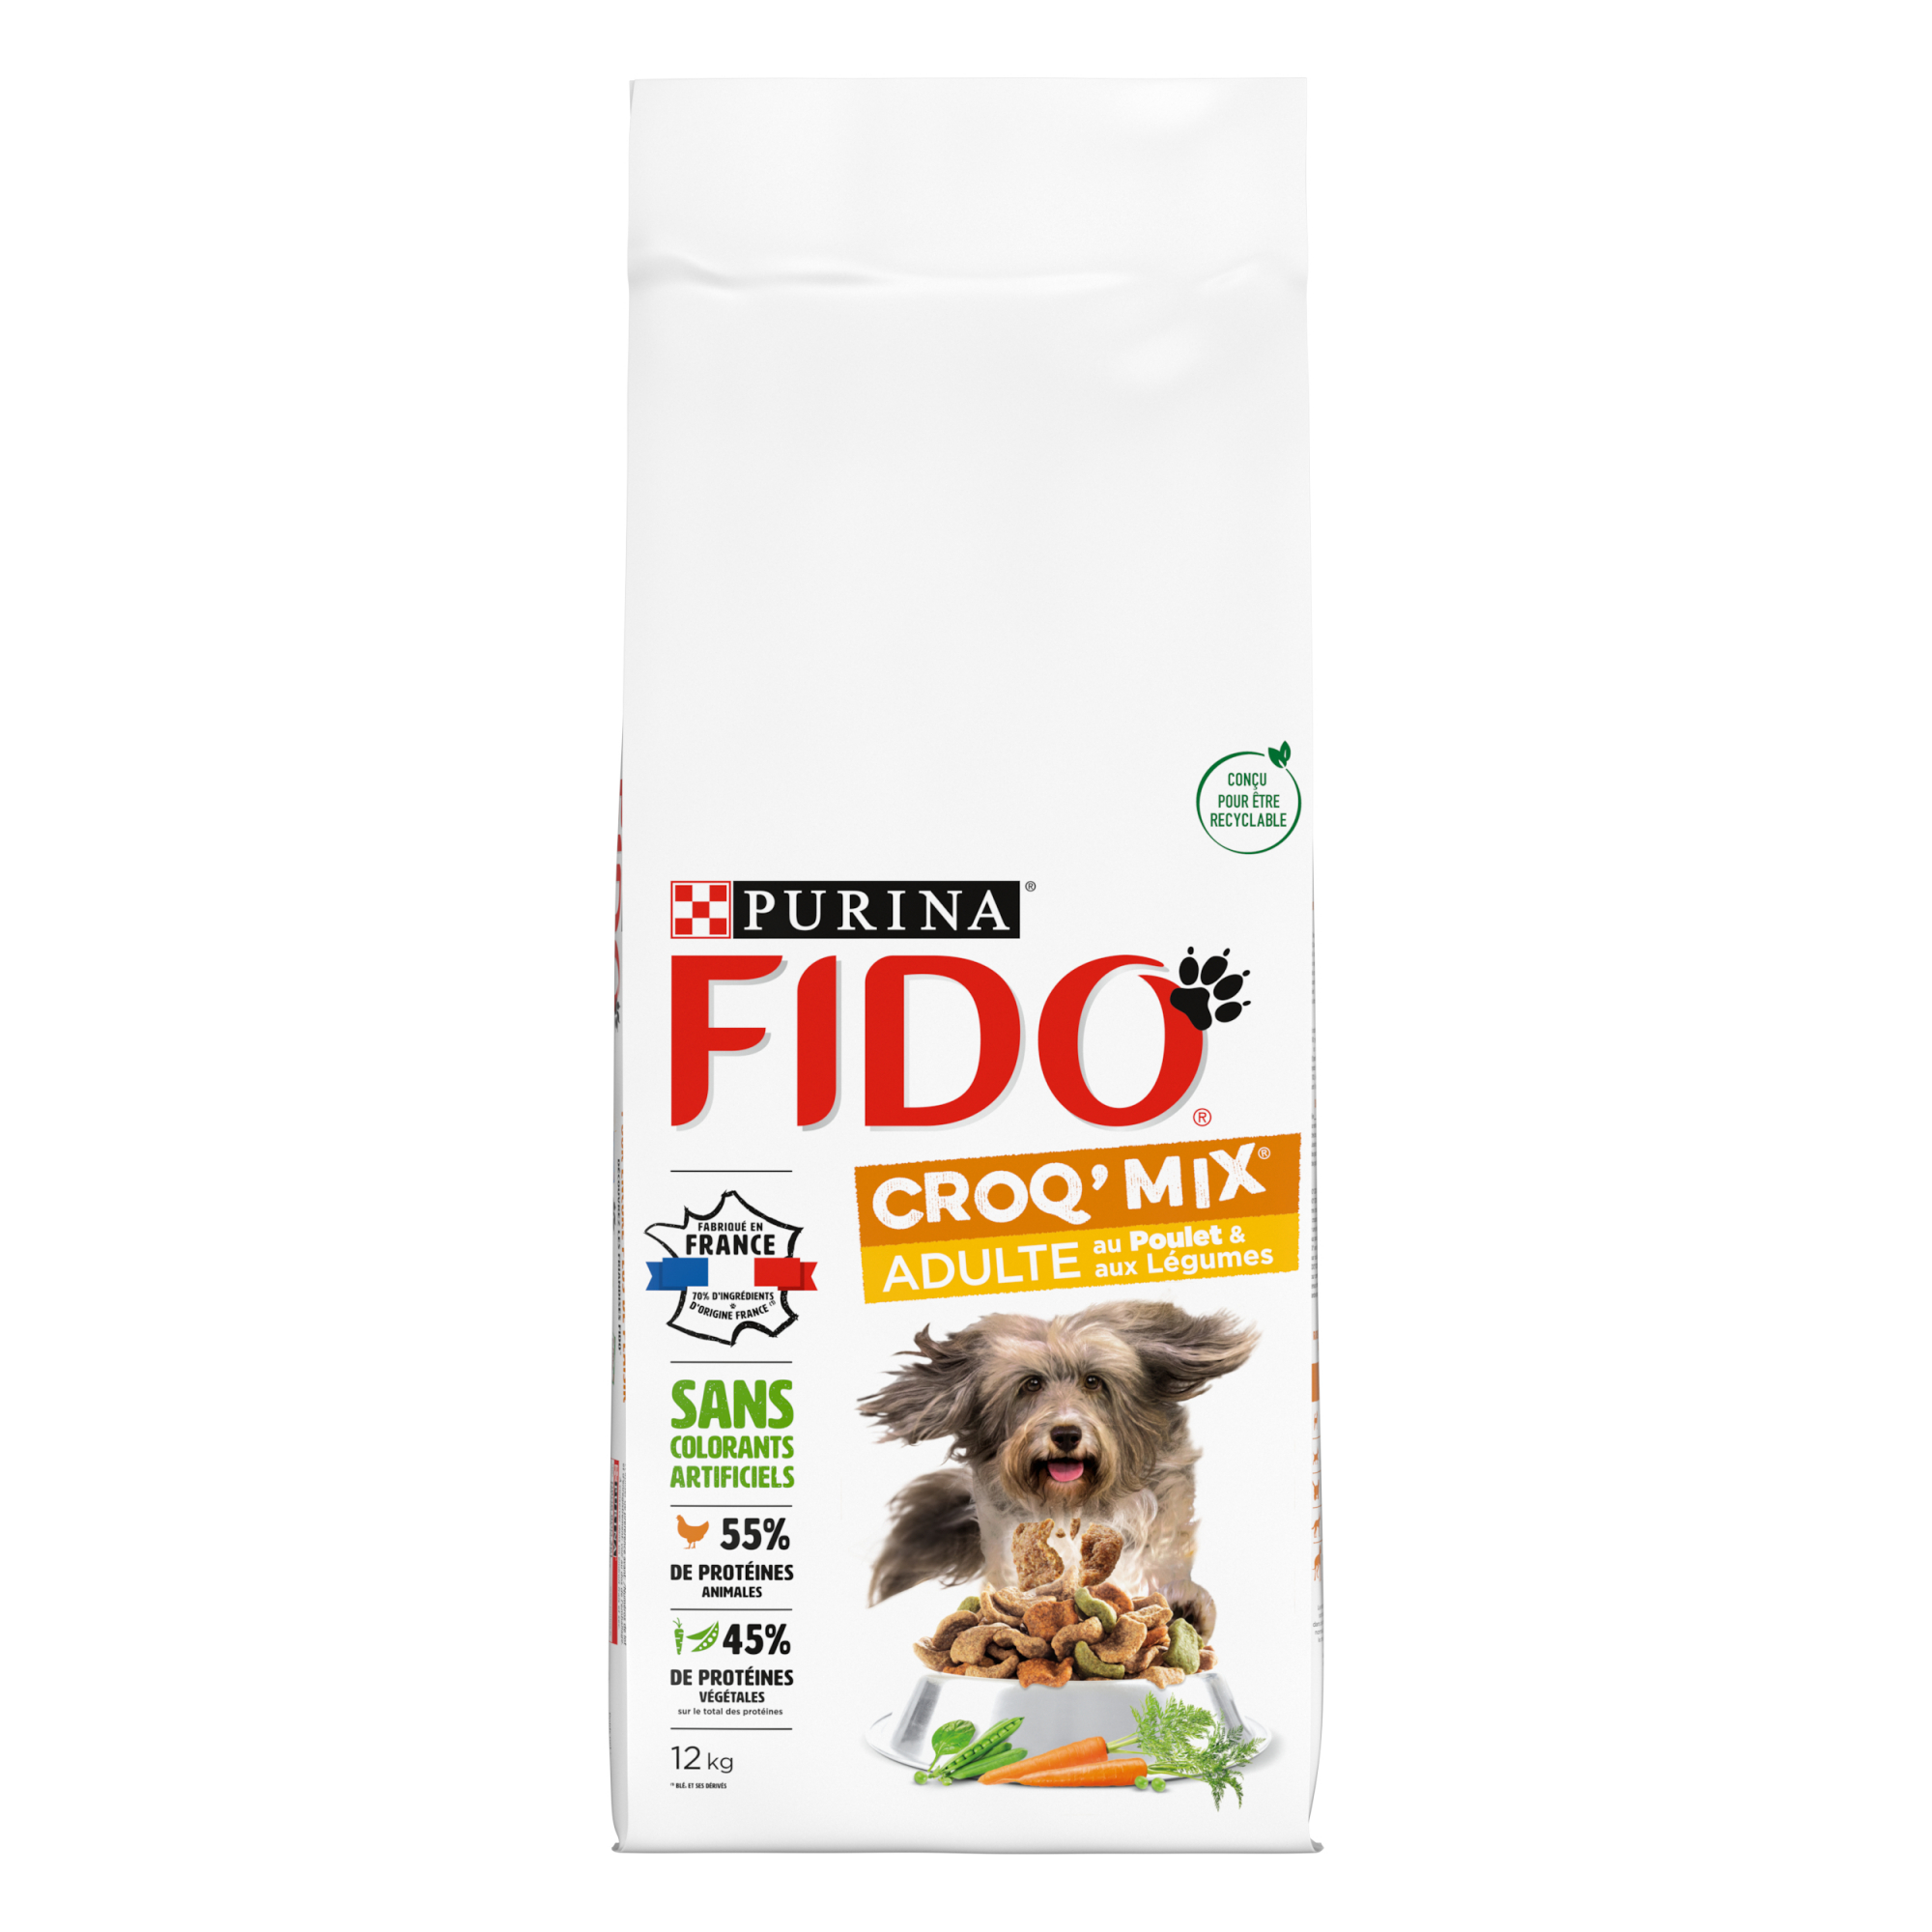 FIDO Croq Mix